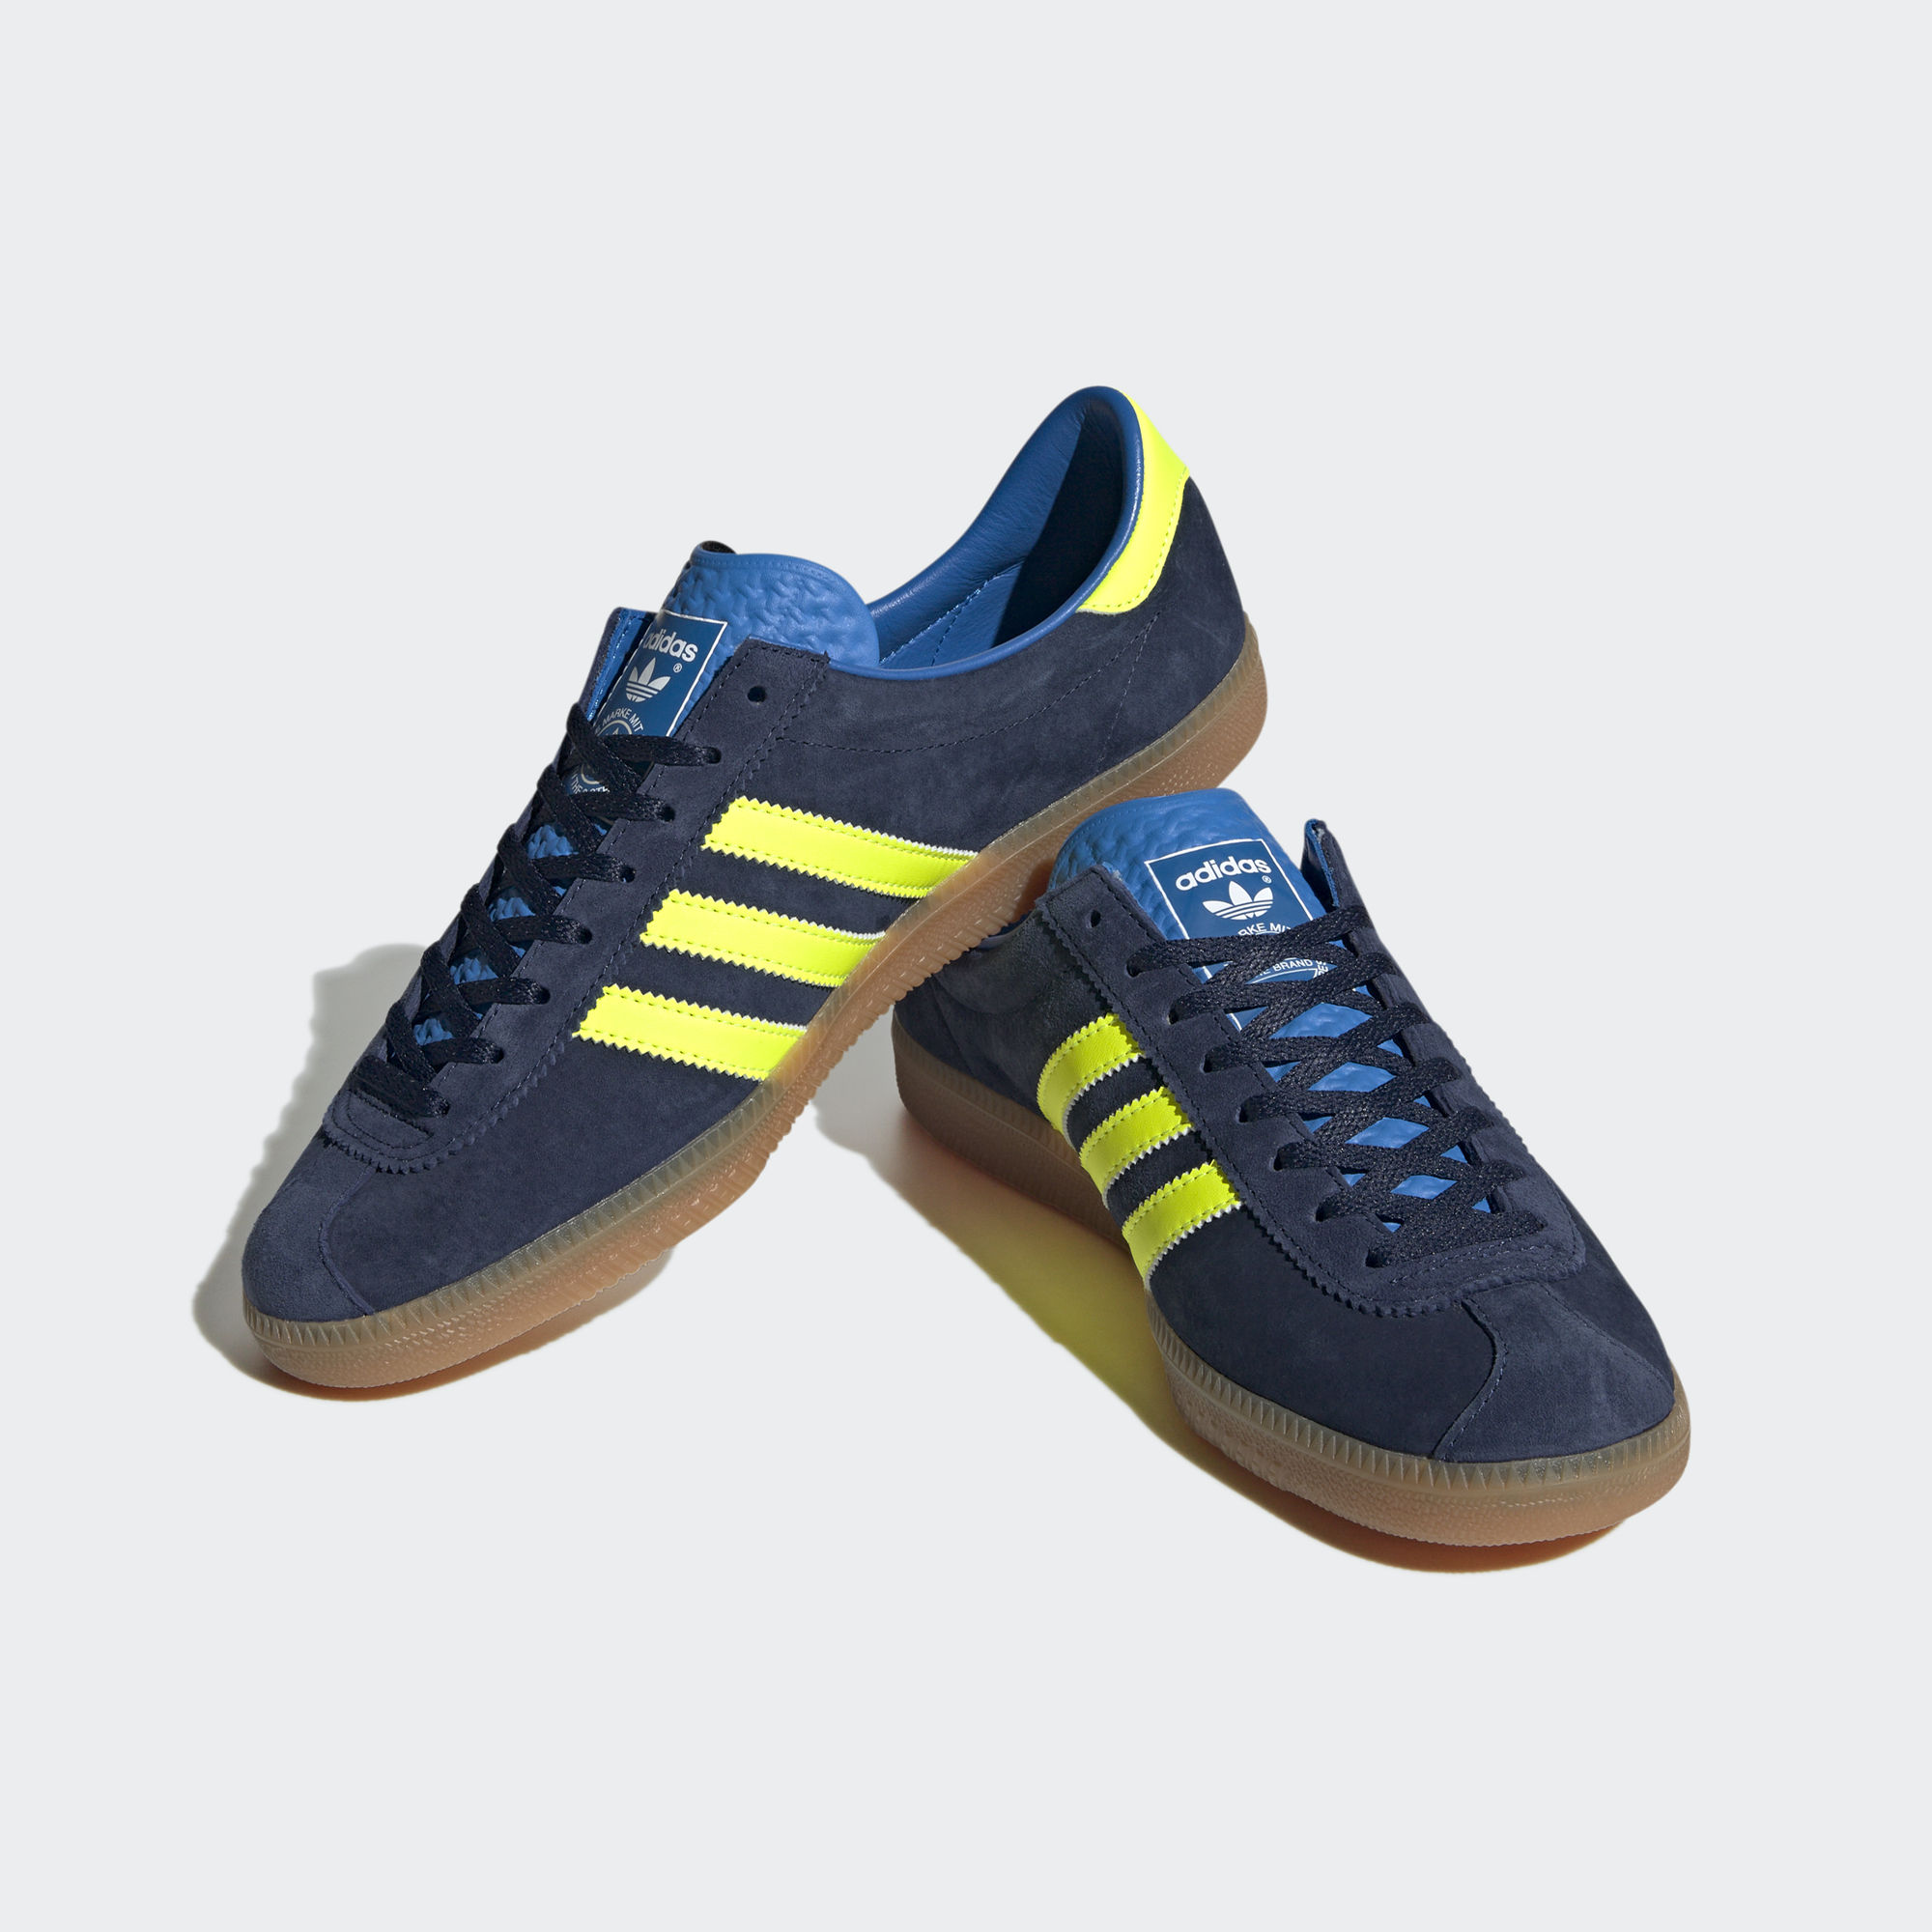 HOCHELAGA SPZL 運動鞋- 深藍色| 男子| adidas(愛迪達)香港官方網上商店